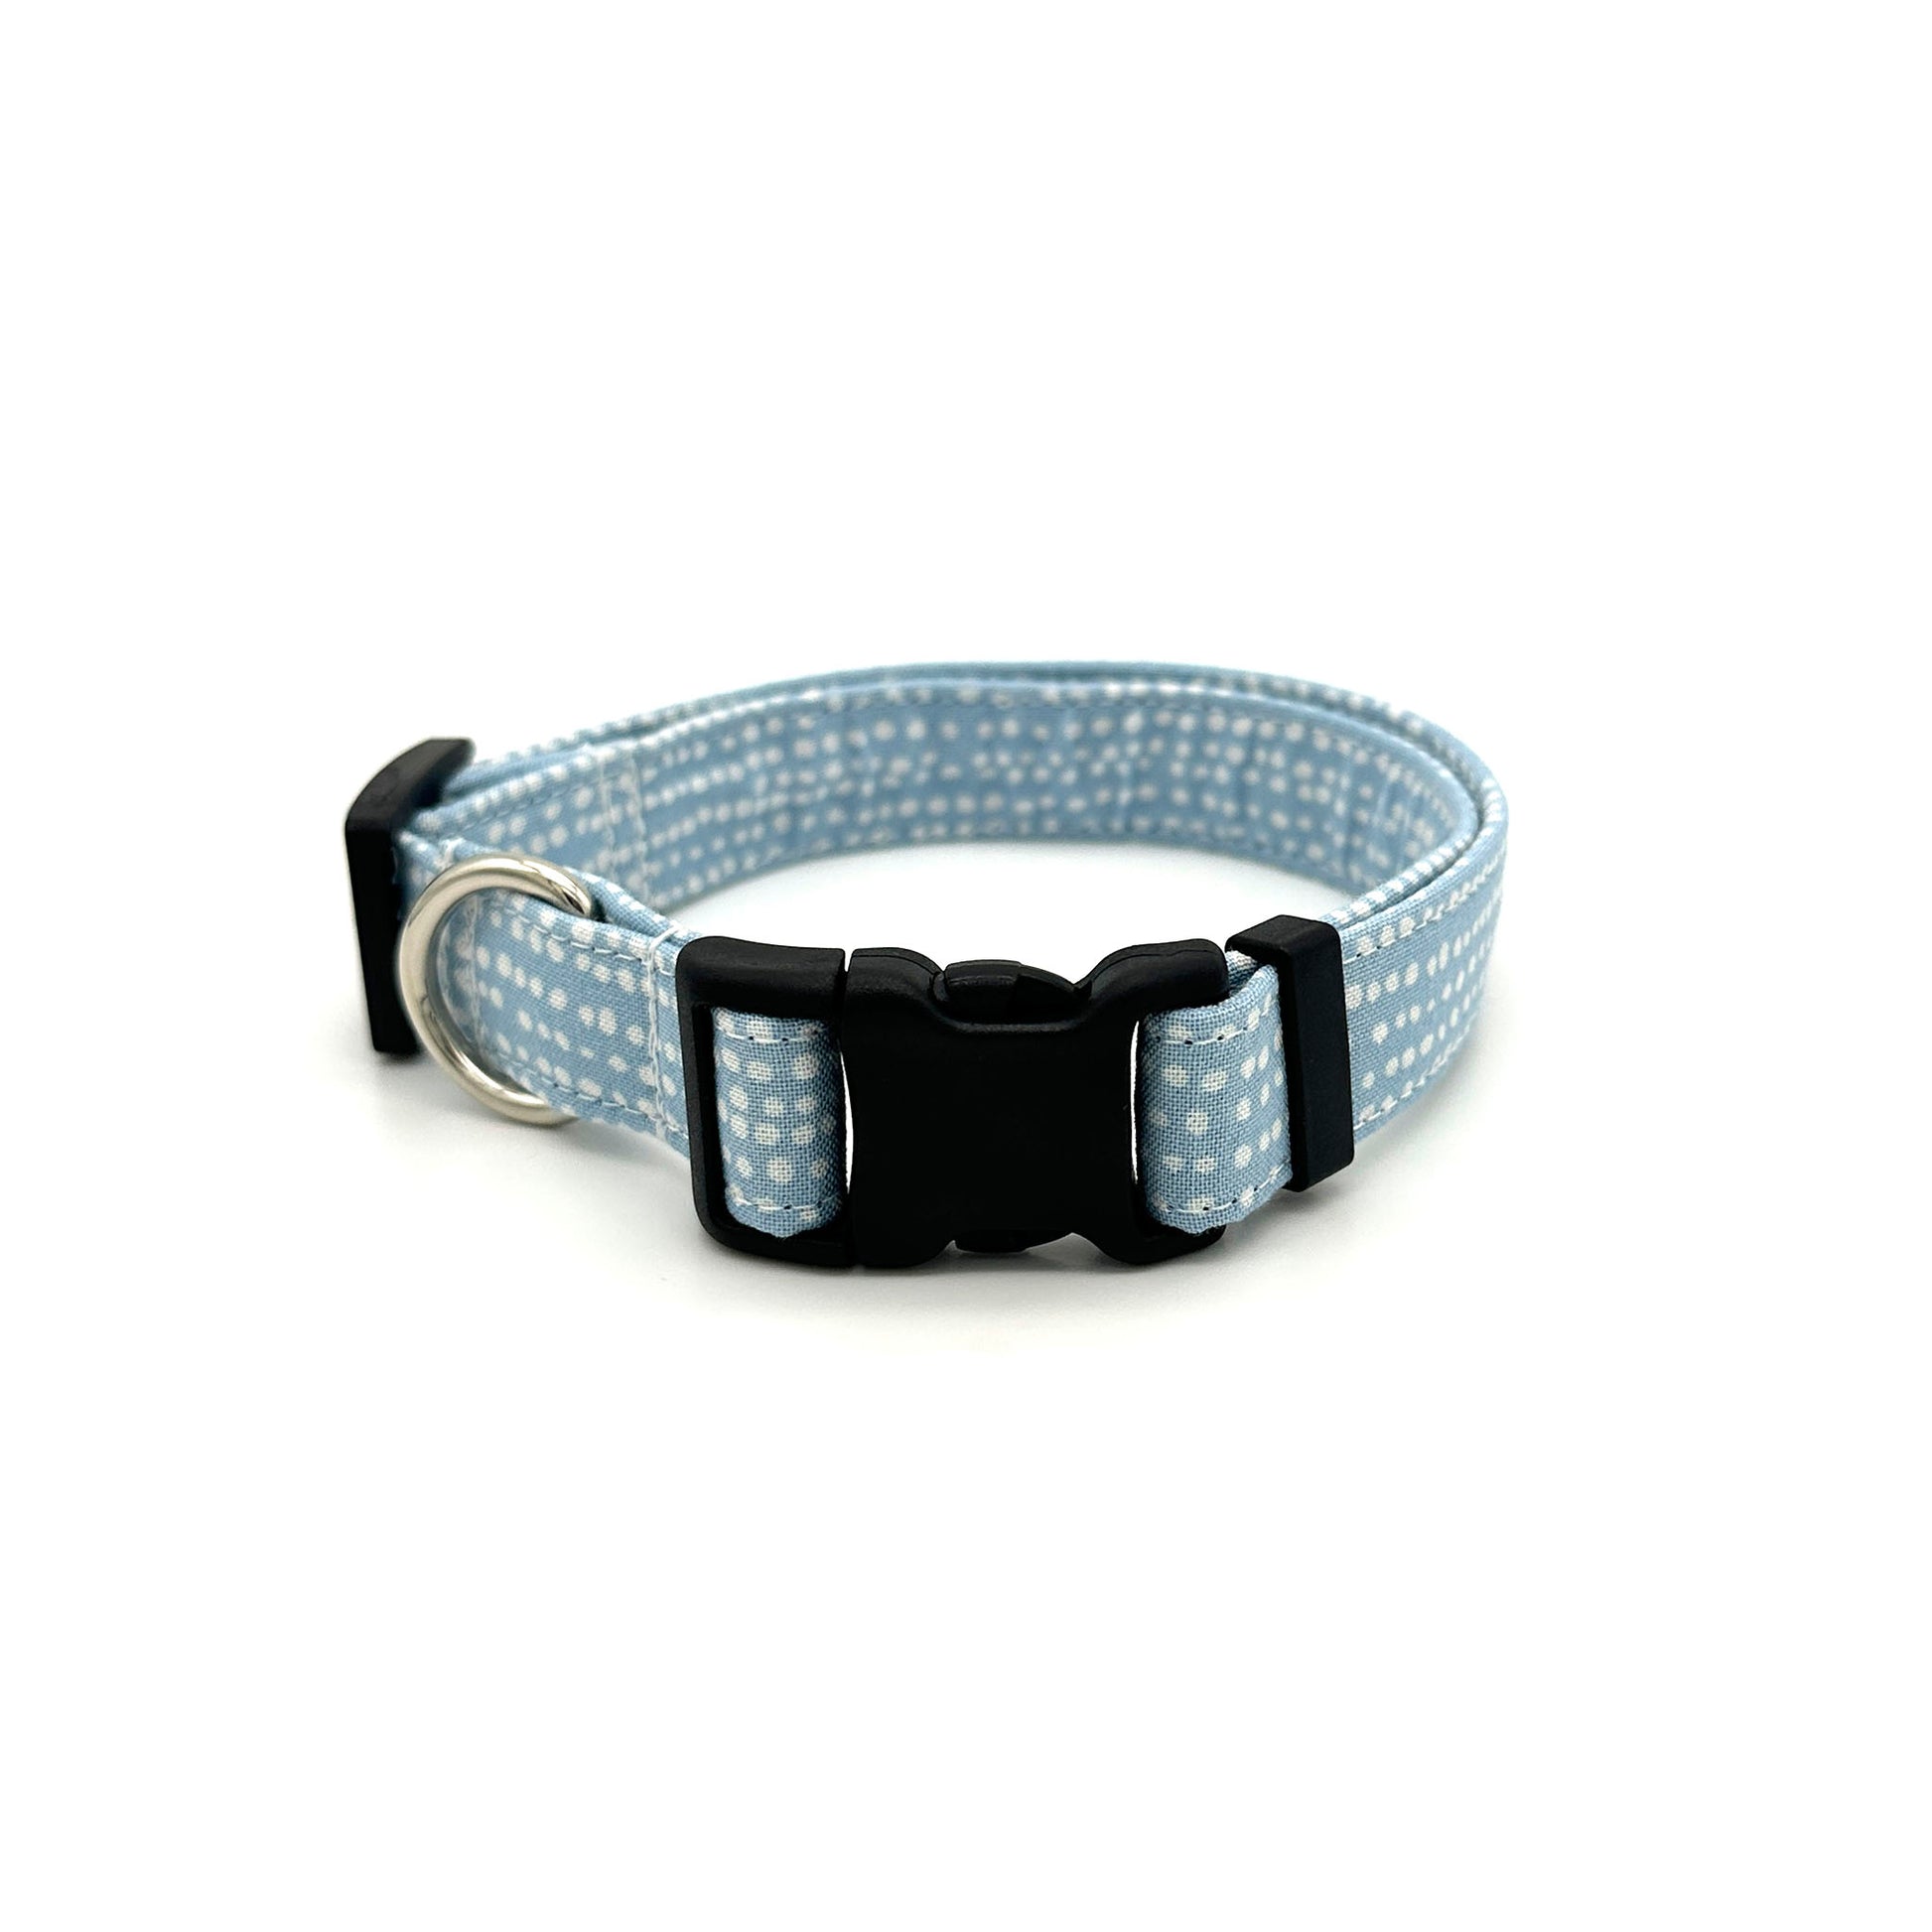 Light Blue Polka Dot Dog Collar